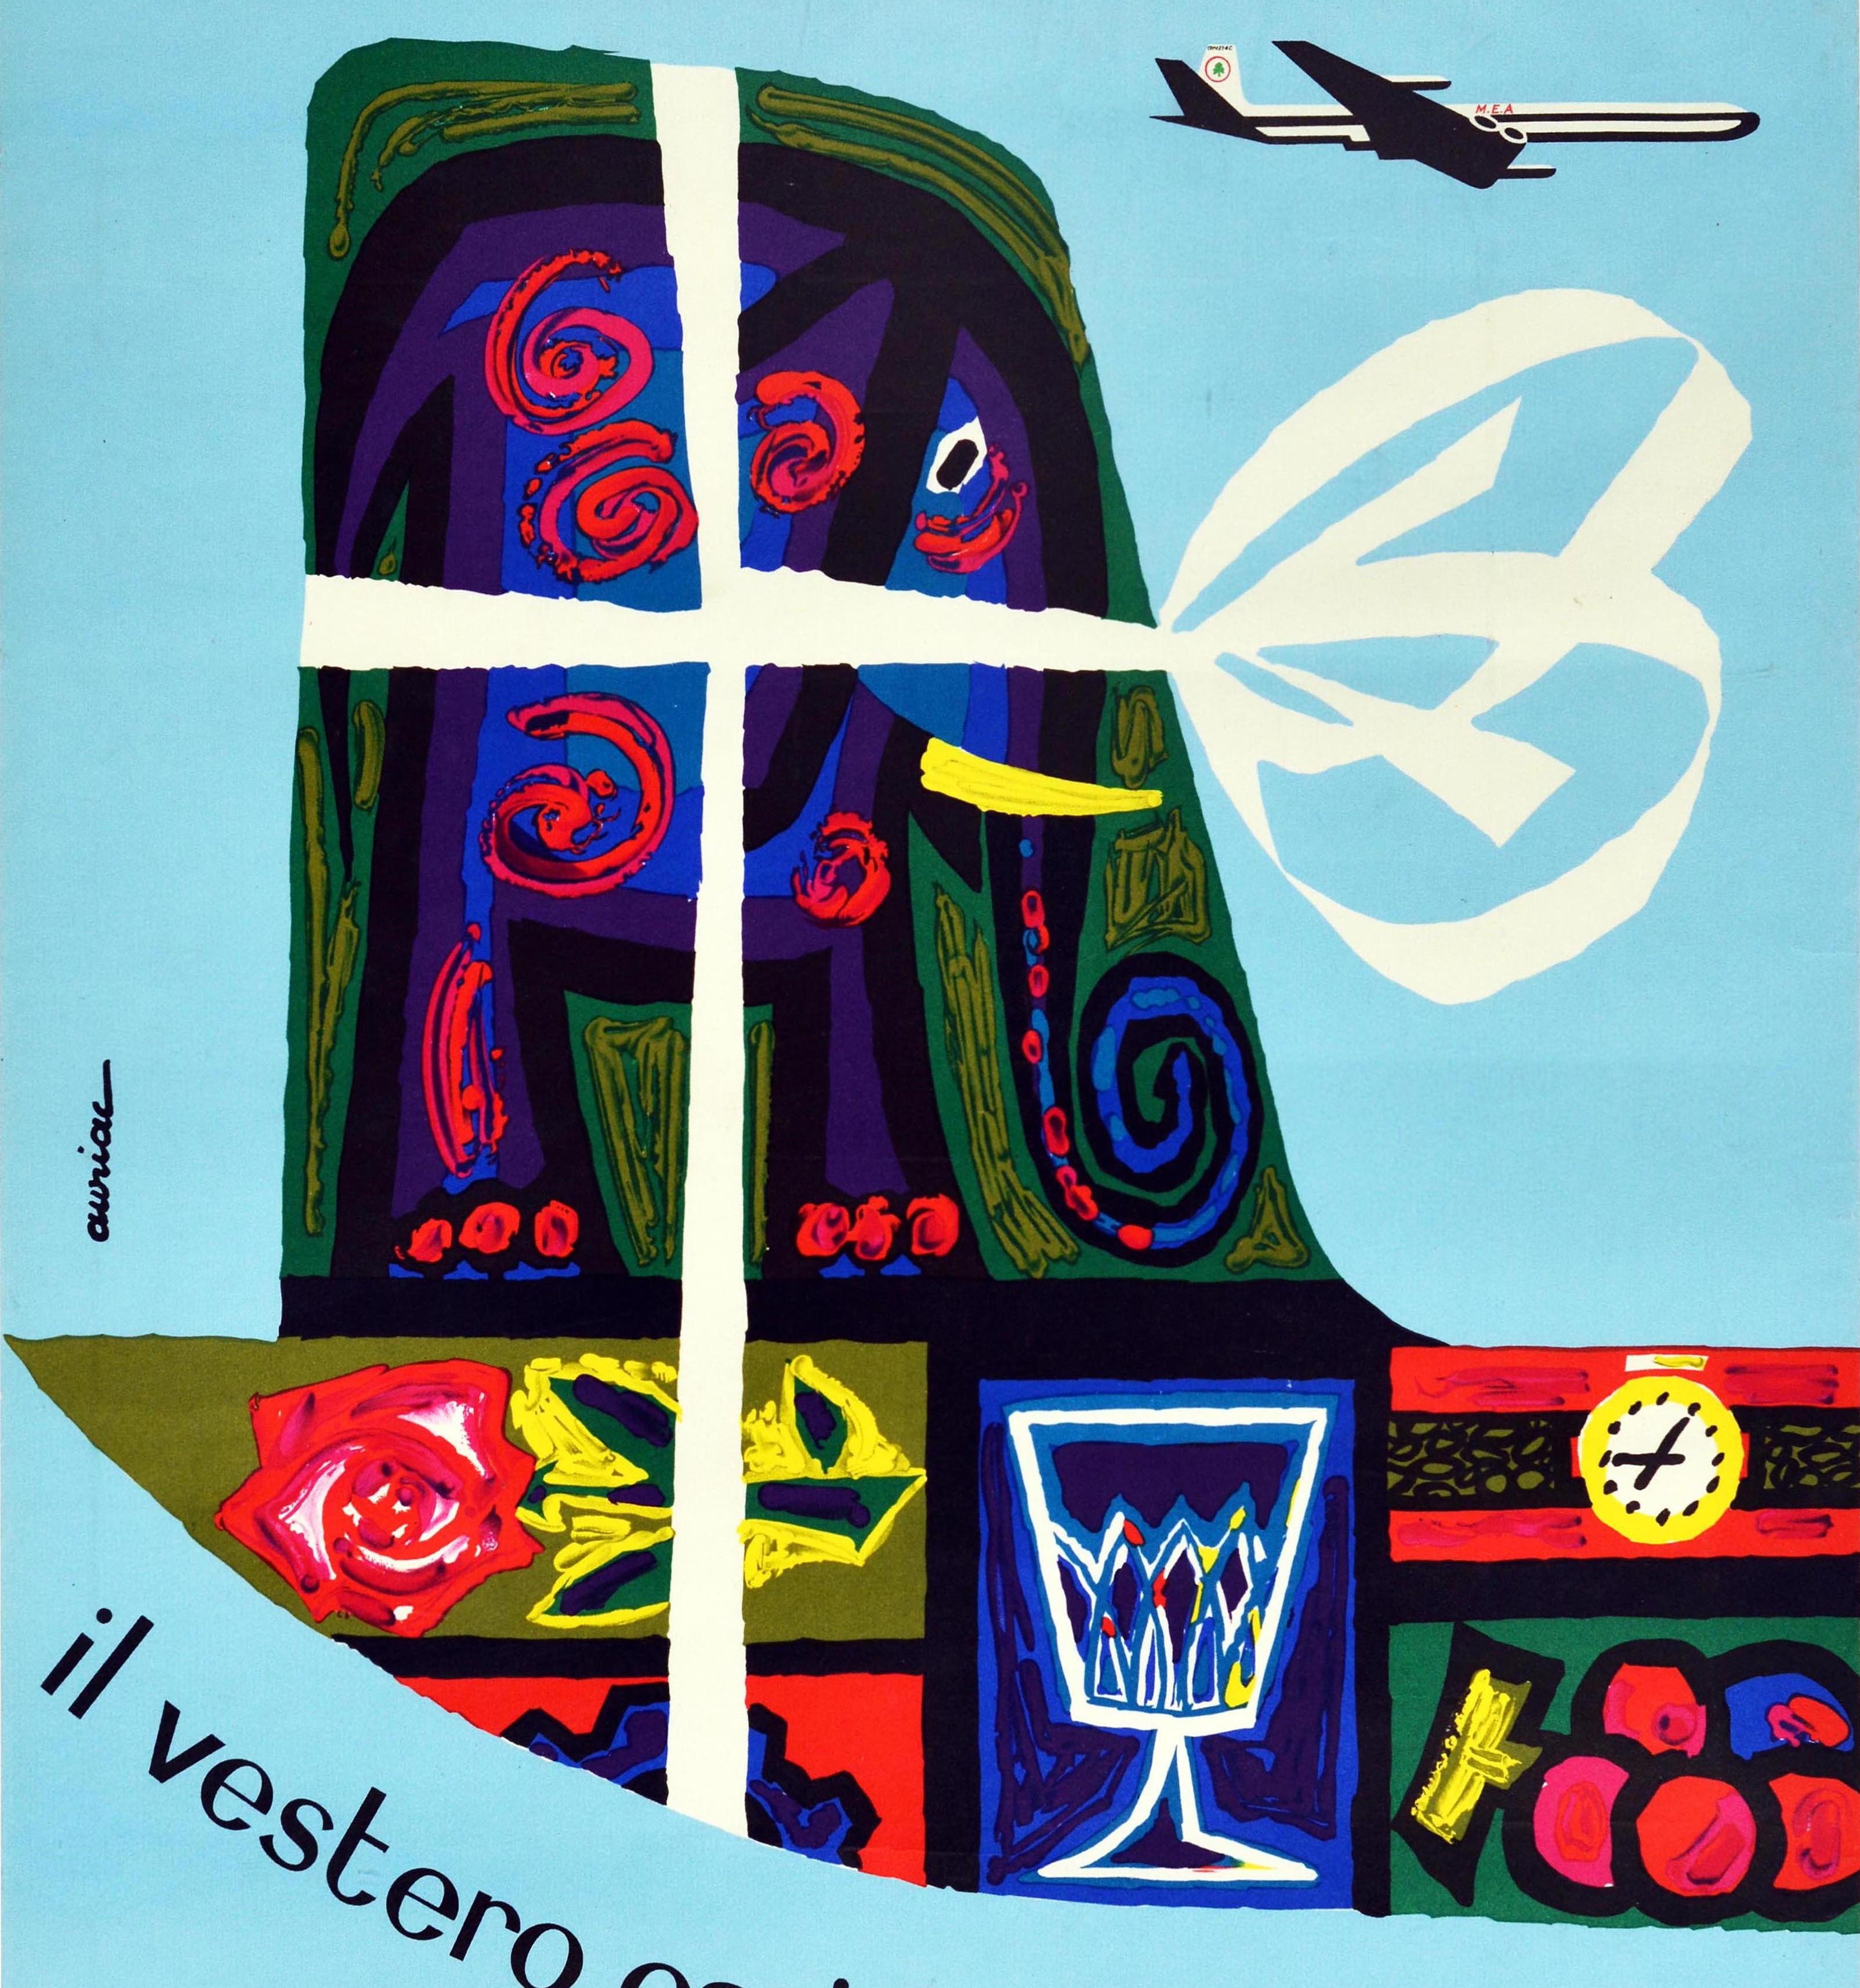 Original-Werbeplakat für die Fluggesellschaft MEA aus dem Nahen Osten mit einem farbenfrohen Entwurf von Jacques Auriac (1922-2003), der das Heck eines Flugzeugs zeigt, das mit einem weißen Band wie ein Geschenk eingewickelt und mit Gegenständen wie